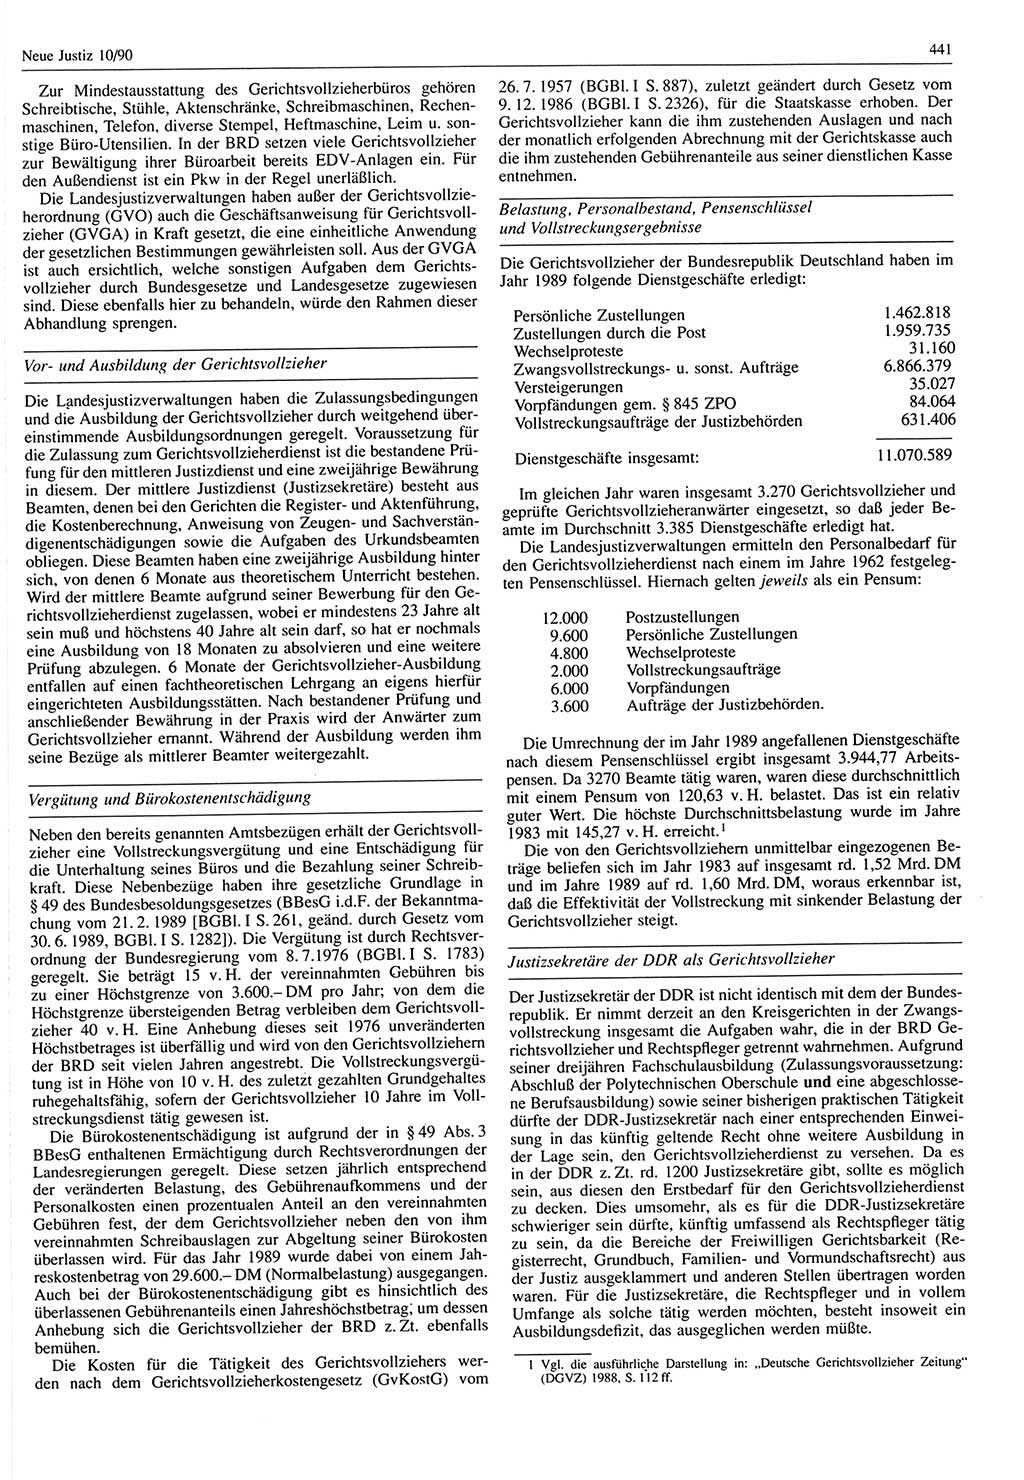 Neue Justiz (NJ), Zeitschrift für Rechtsetzung und Rechtsanwendung [Deutsche Demokratische Republik (DDR)], 44. Jahrgang 1990, Seite 441 (NJ DDR 1990, S. 441)